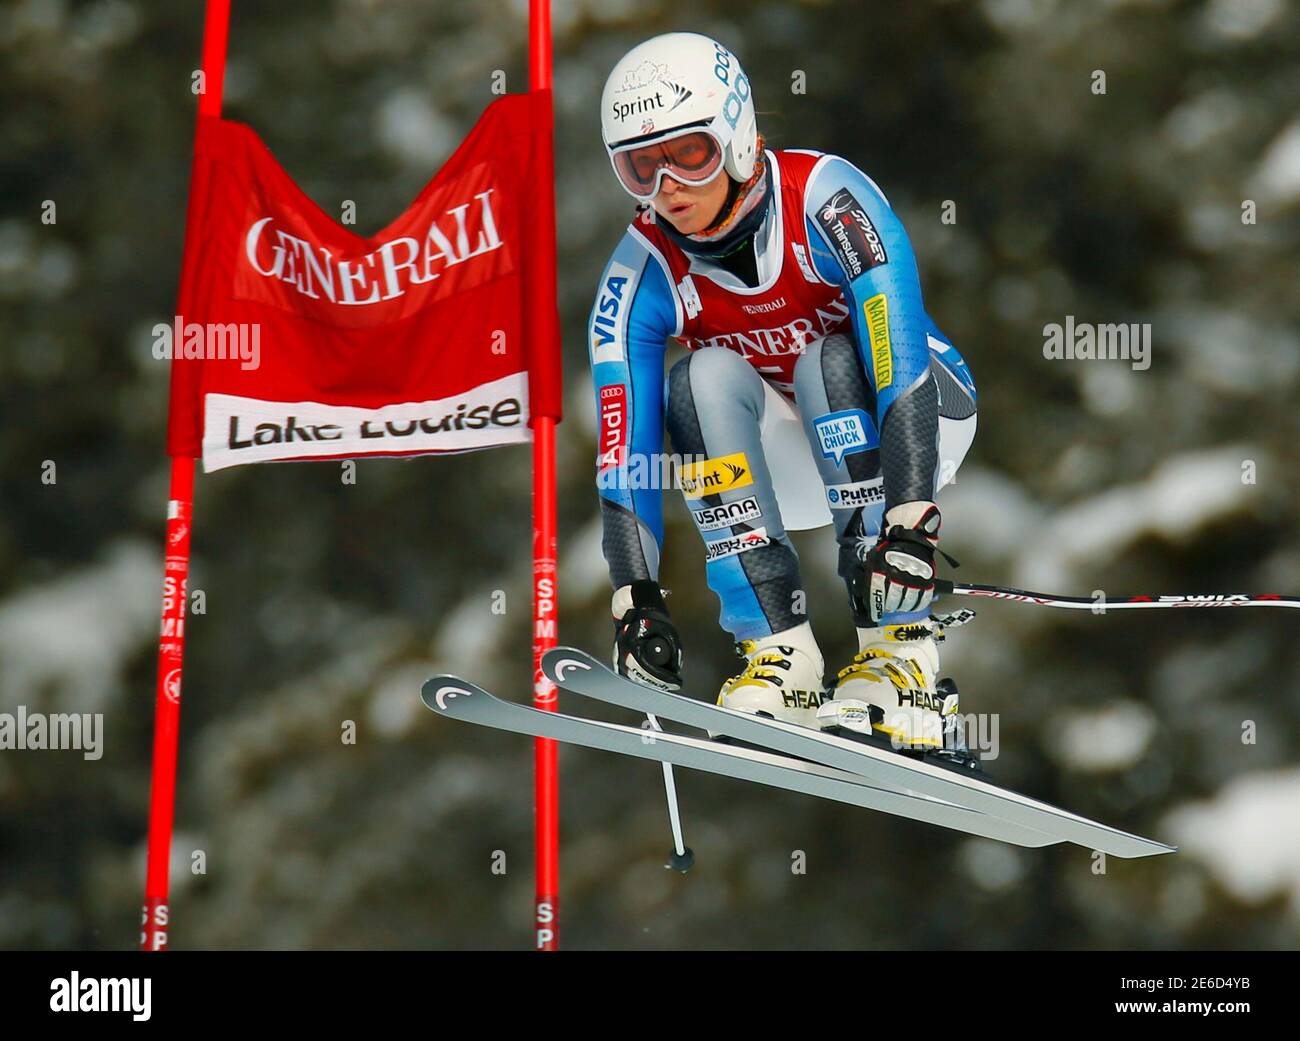 Julia Mancuso degli Stati Uniti prende l'aria durante l'allenamento di sci alpino per la Coppa del mondo delle Donne Downhill nel lago Louise, Alberta, 27 novembre 2012. REUTERS/Mike Blake (CANADA - Tags: SCI SPORTIVO) Foto Stock